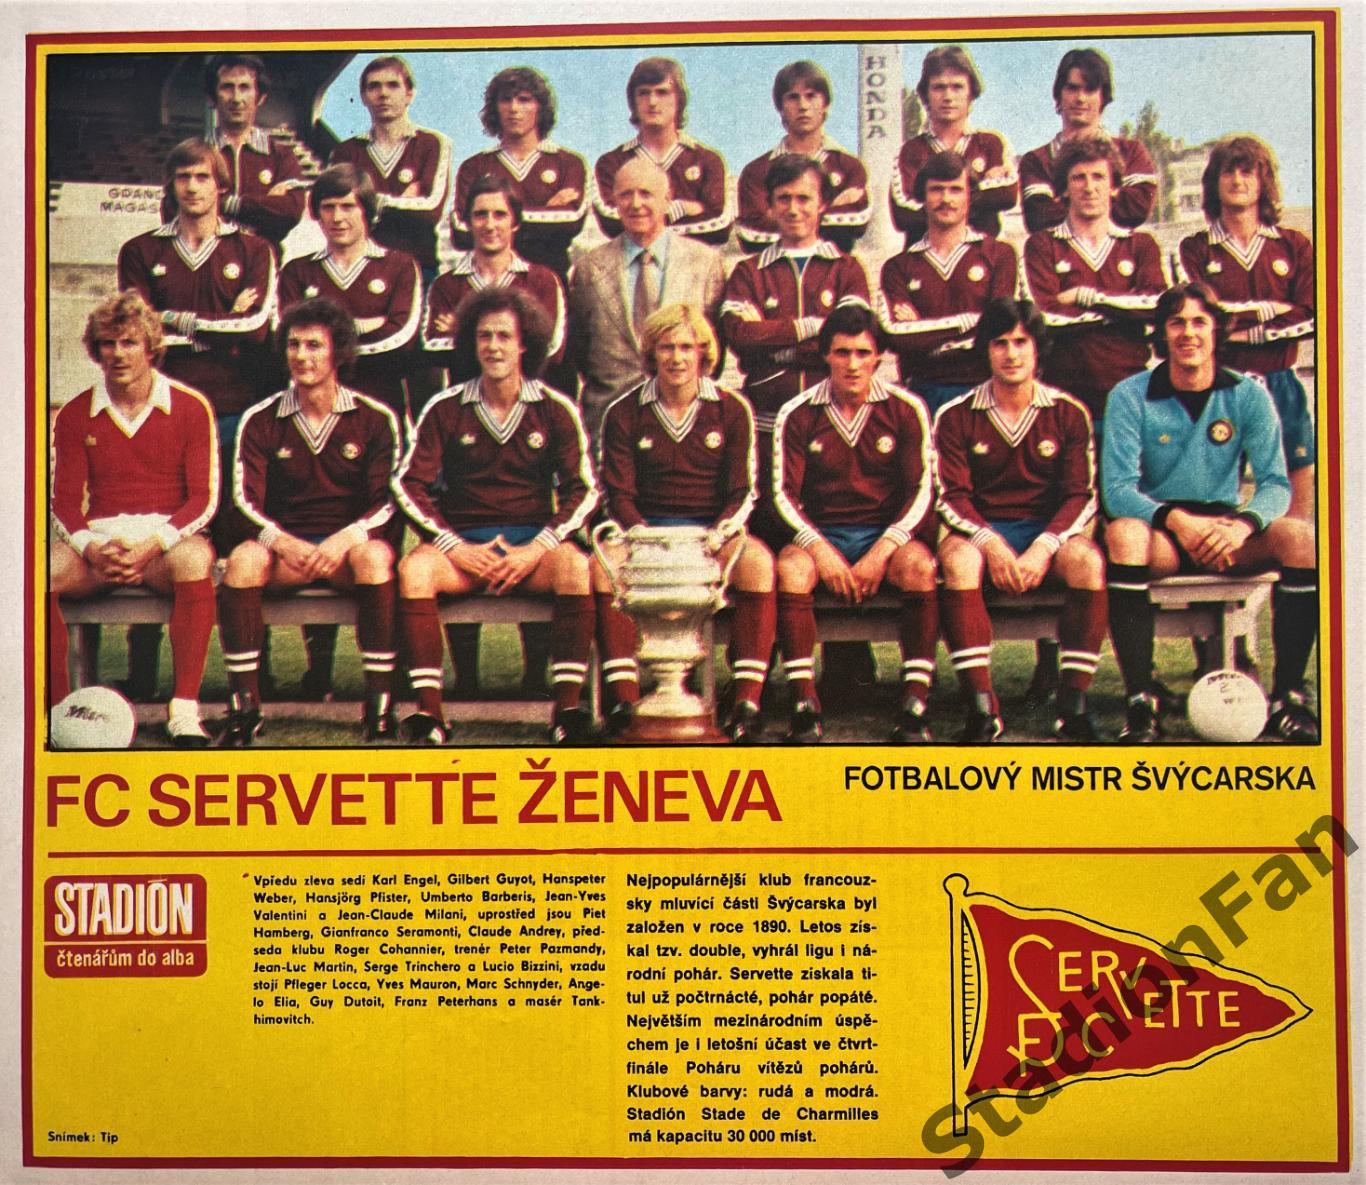 Постер из журнала Стадион (Stadion) - Servette Zeneva, 1979.